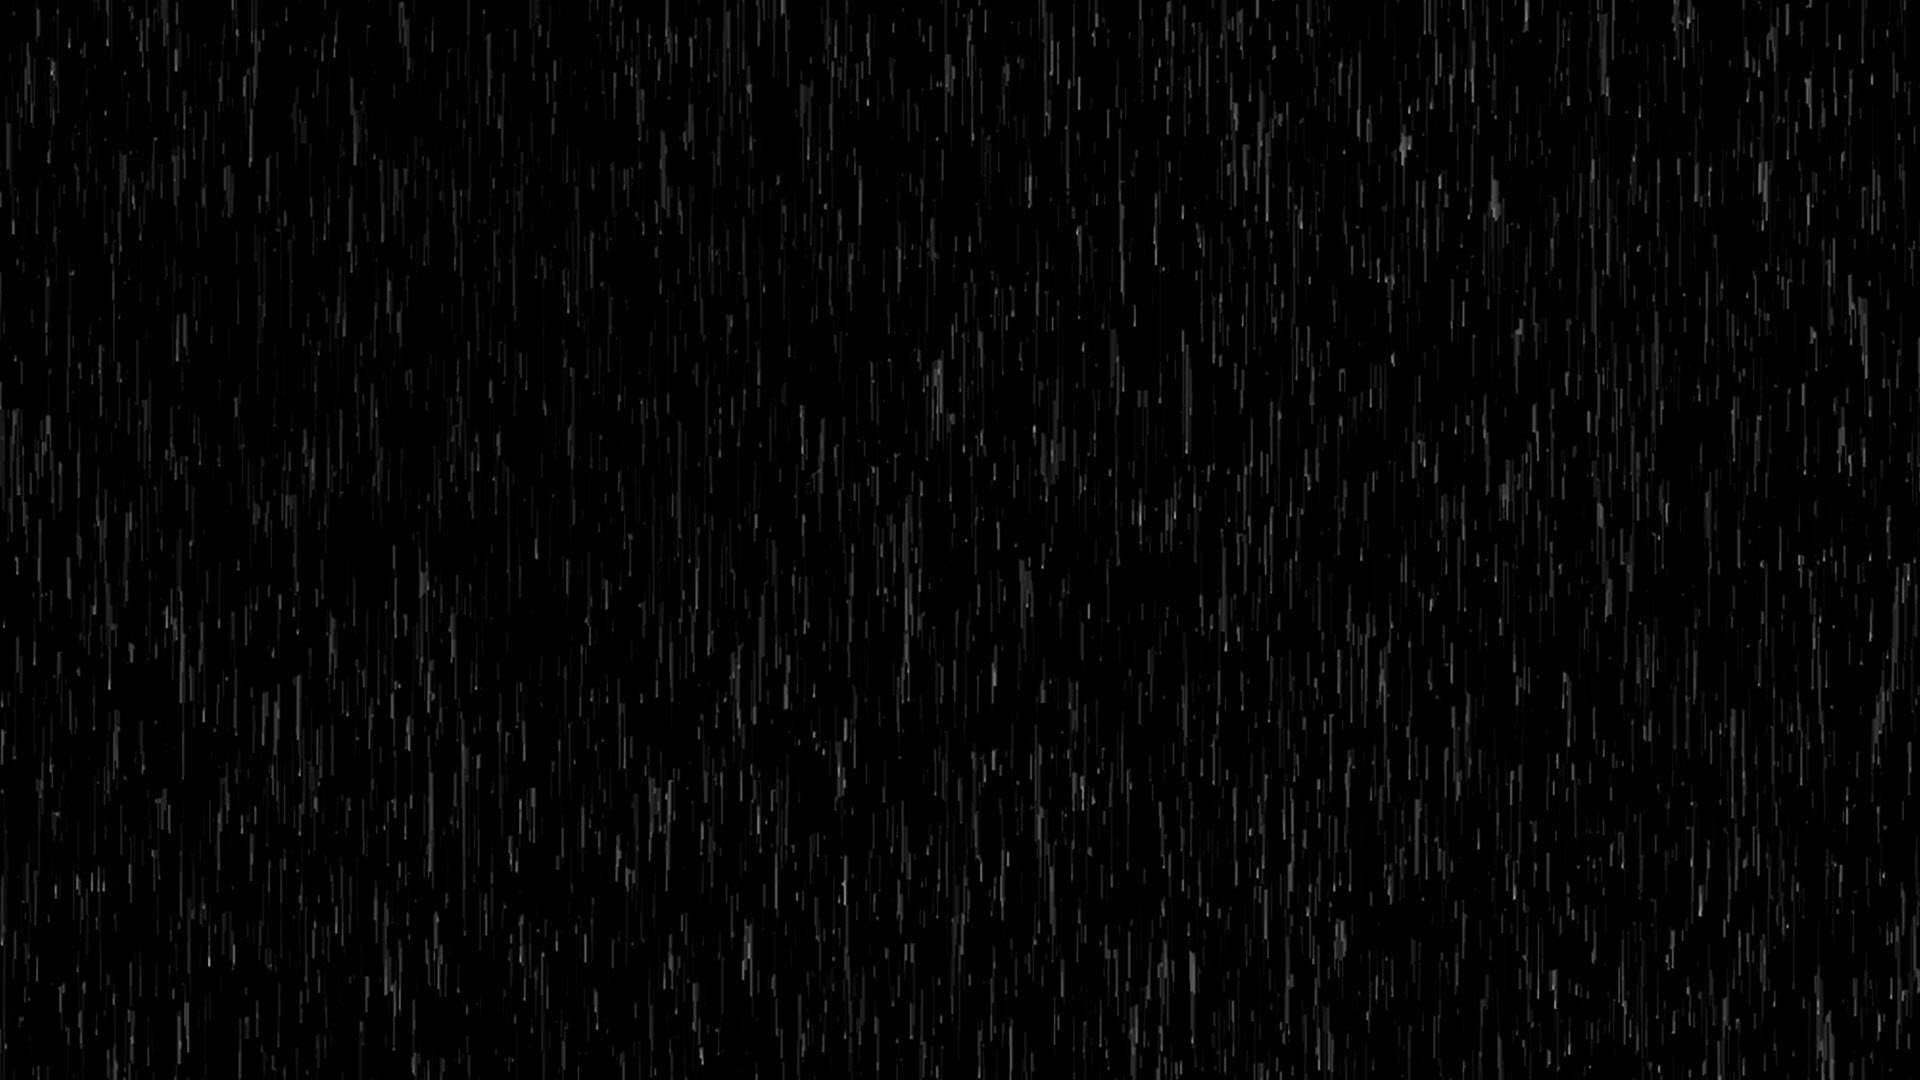 Particle rain. Текстура дождя. Эффект дождя без фона. Черный фон для ФШ. Ливень текстура.